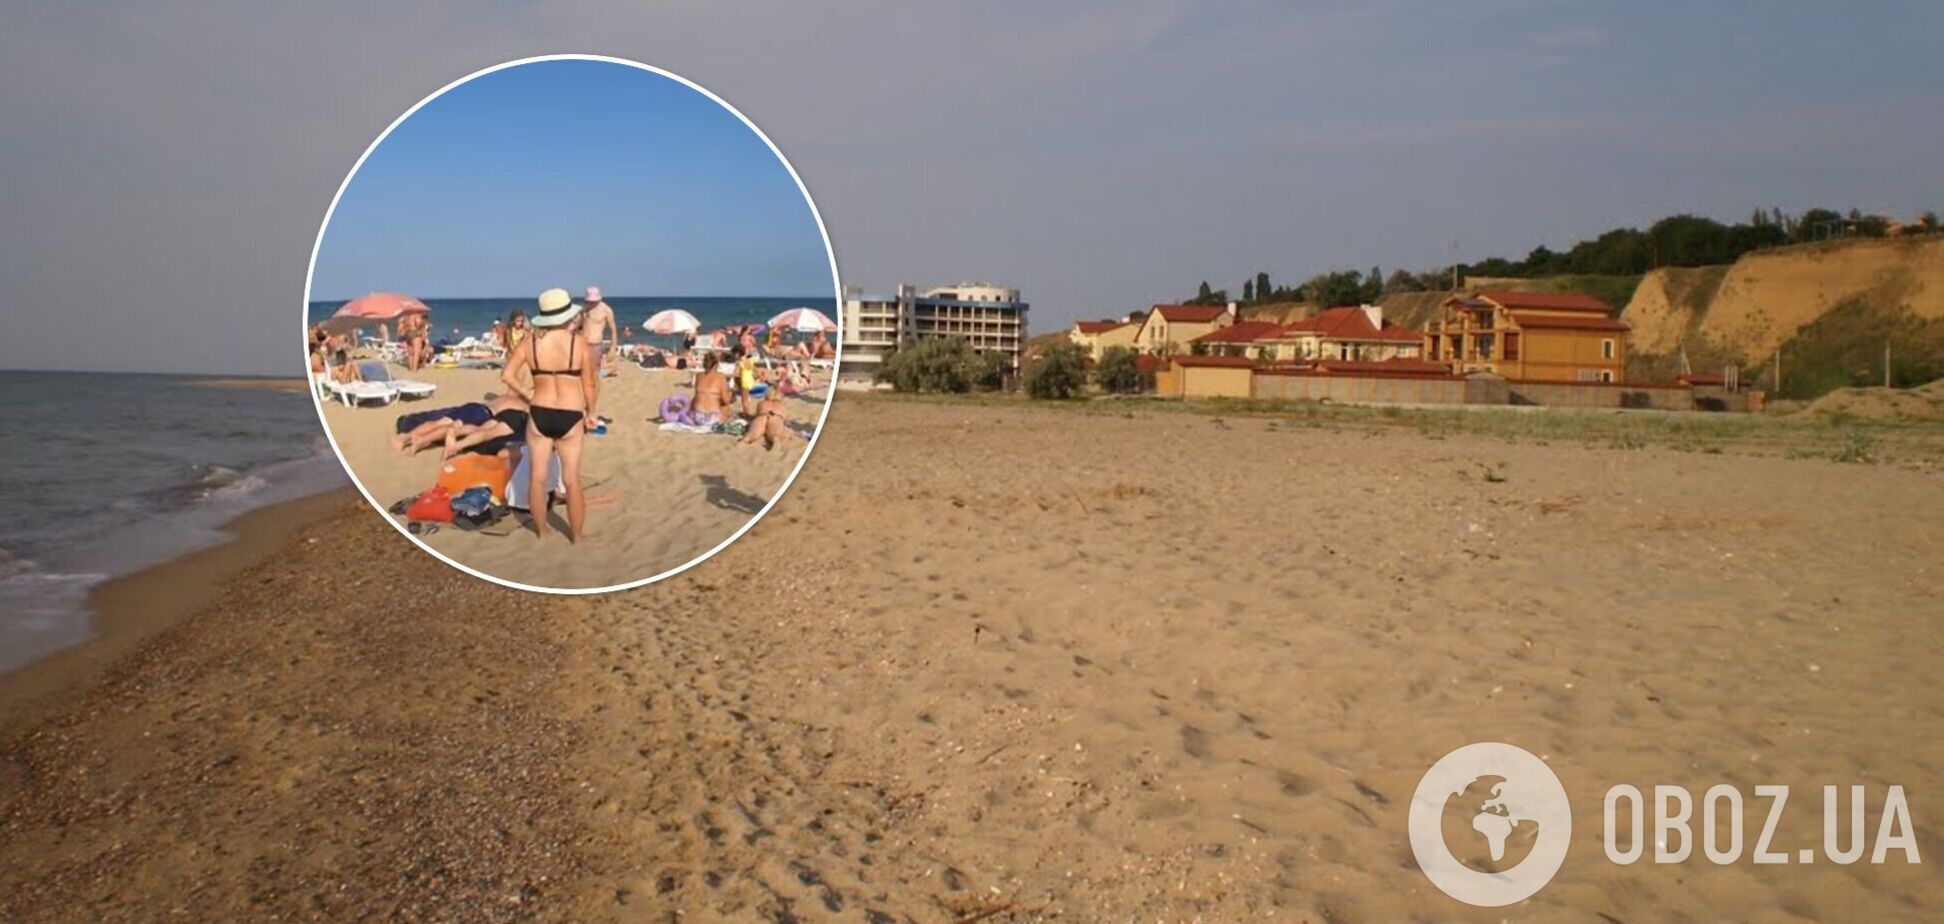 Грязное море и много водорослей: туристку разочаровал отдых в Одесской области. Видео